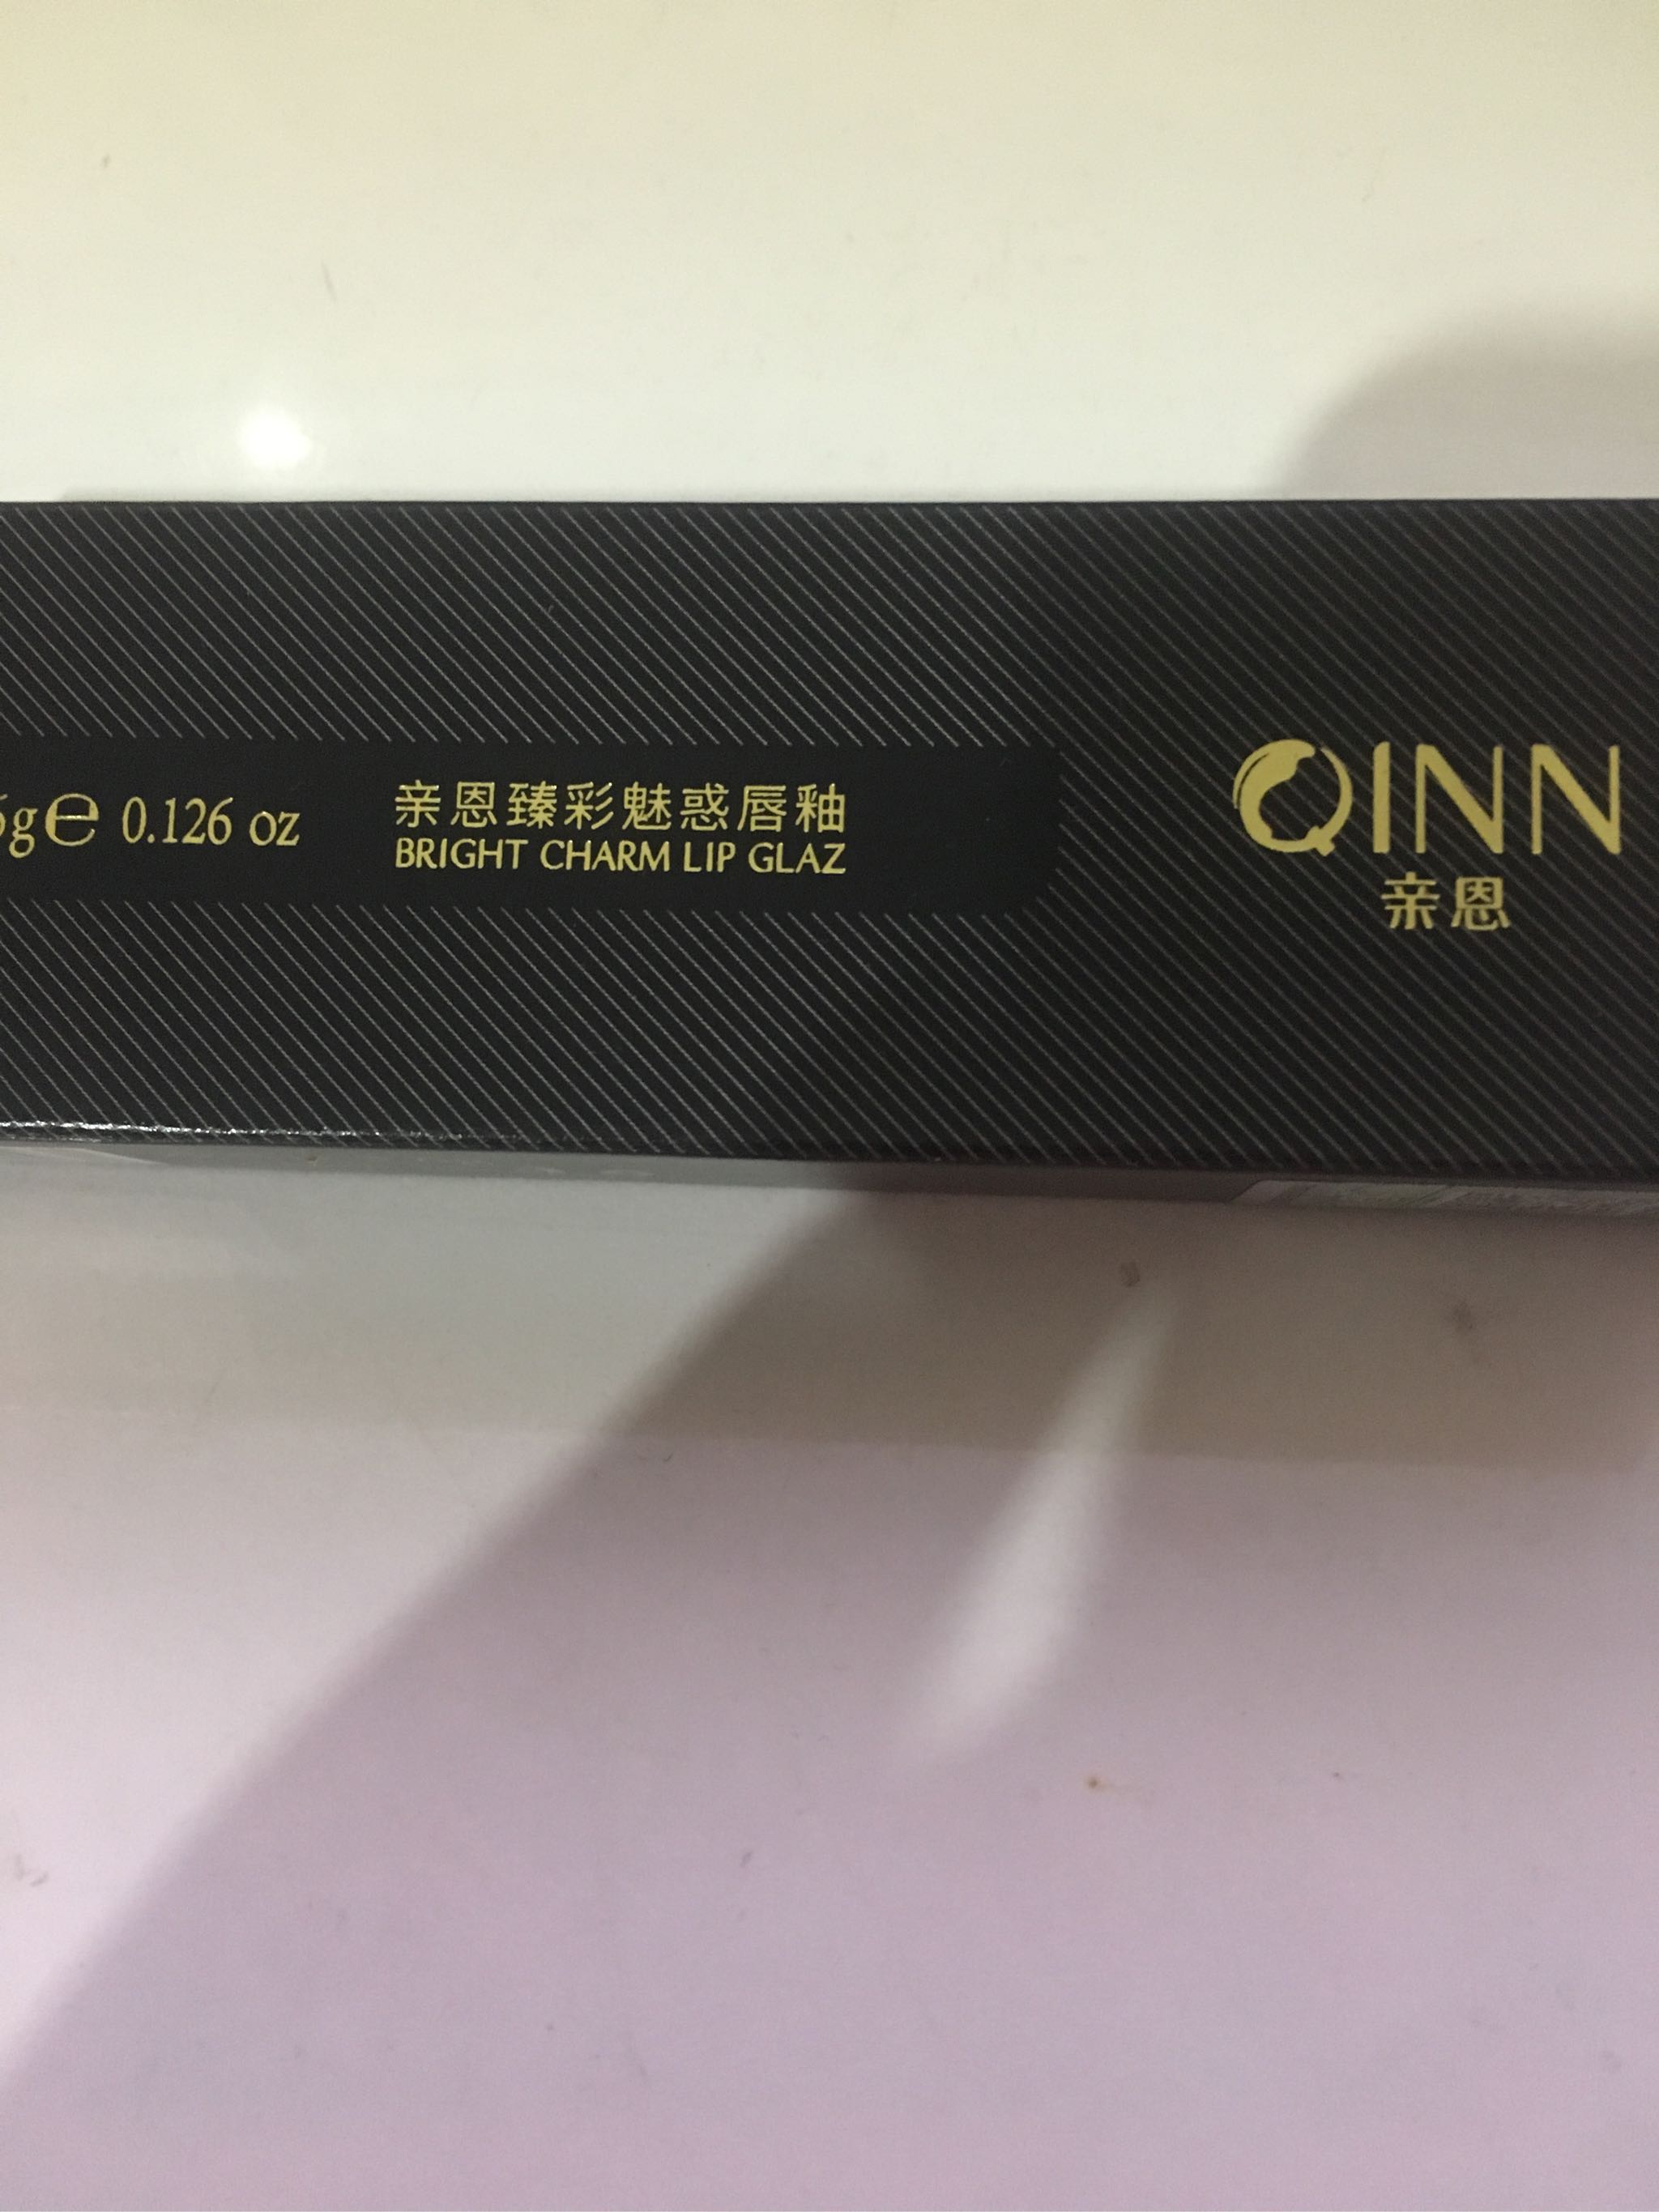 孕妇可用 QINN亲恩品牌推出的惊艳唇釉